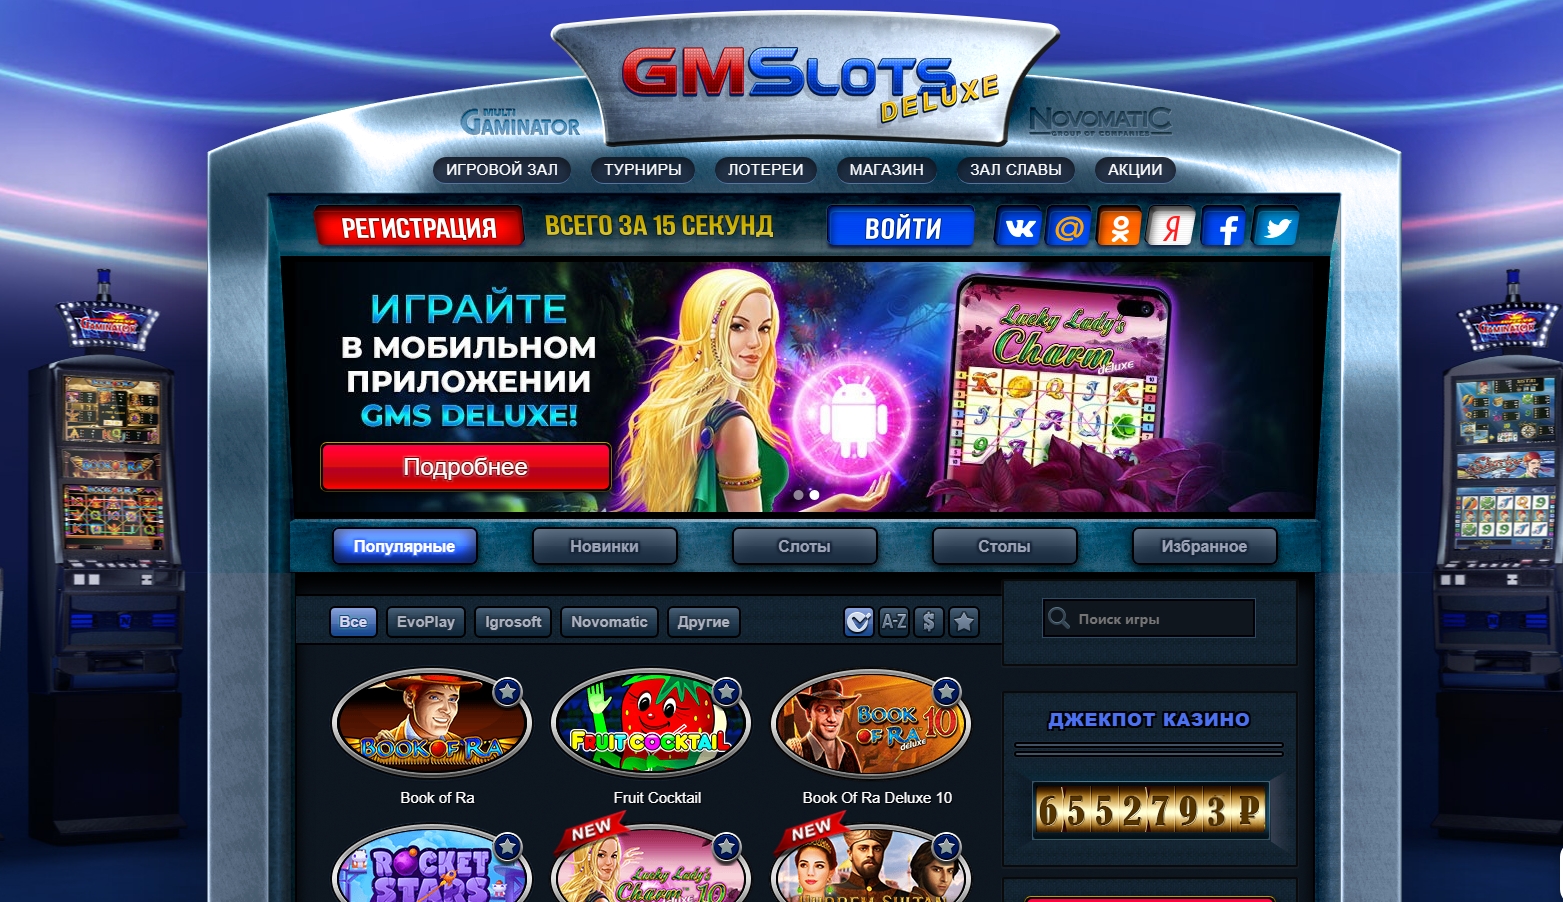 Казино гаминатор bitstarz casino скачать через торрент